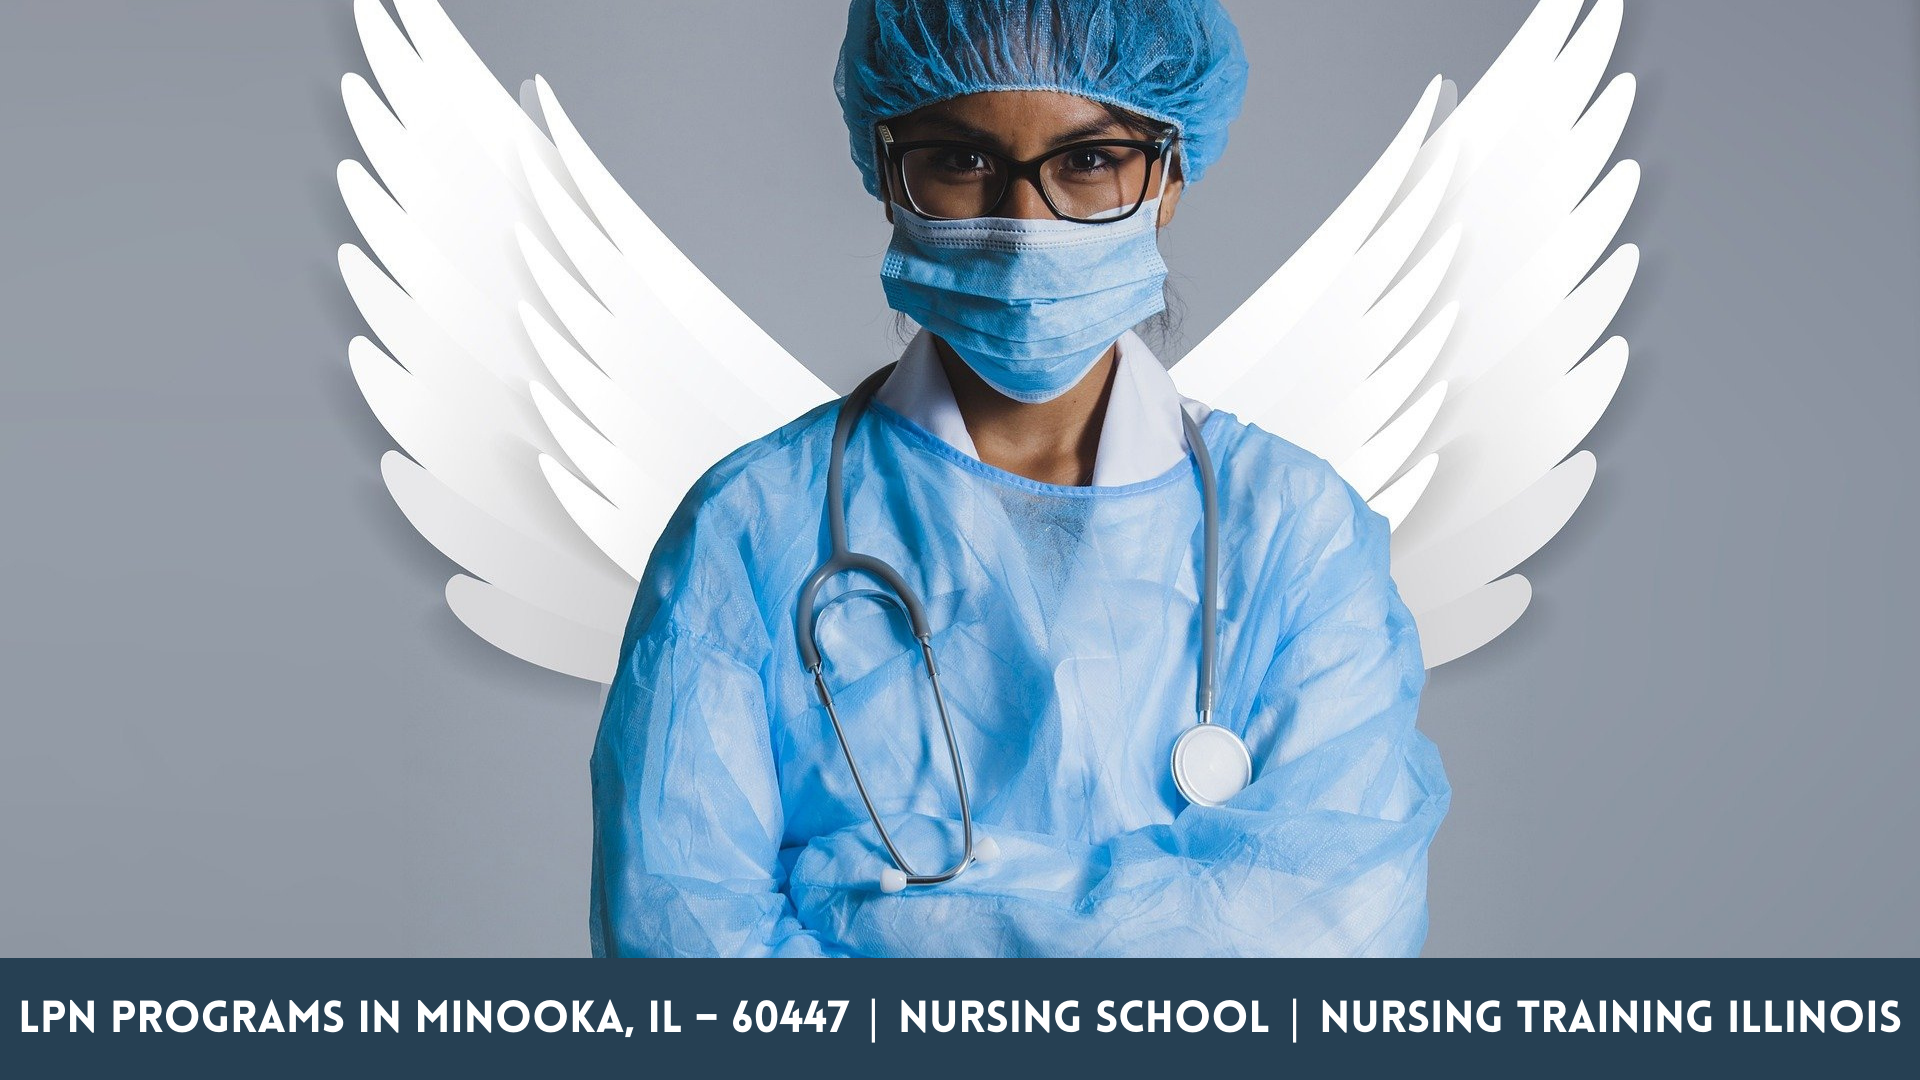 LPN Programs in Minooka, IL – 60447 | Nursing School | Nursing Training Illinois